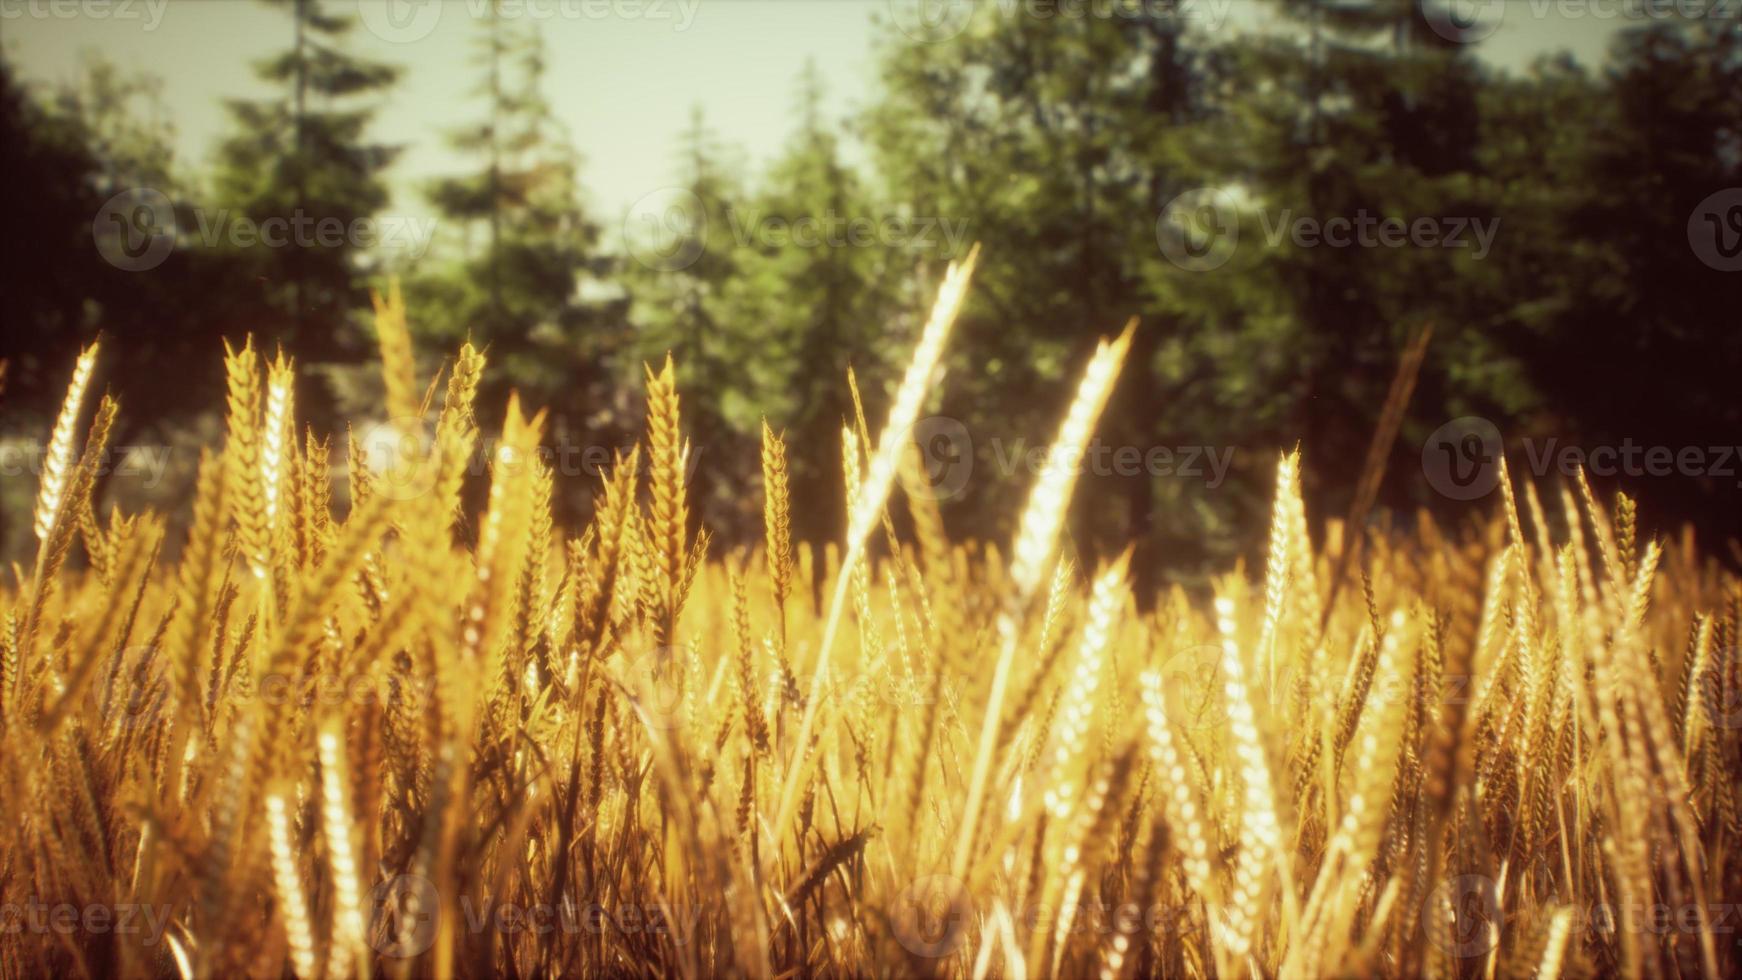 cena do pôr do sol ou nascer do sol no campo com centeio jovem ou trigo no verão foto